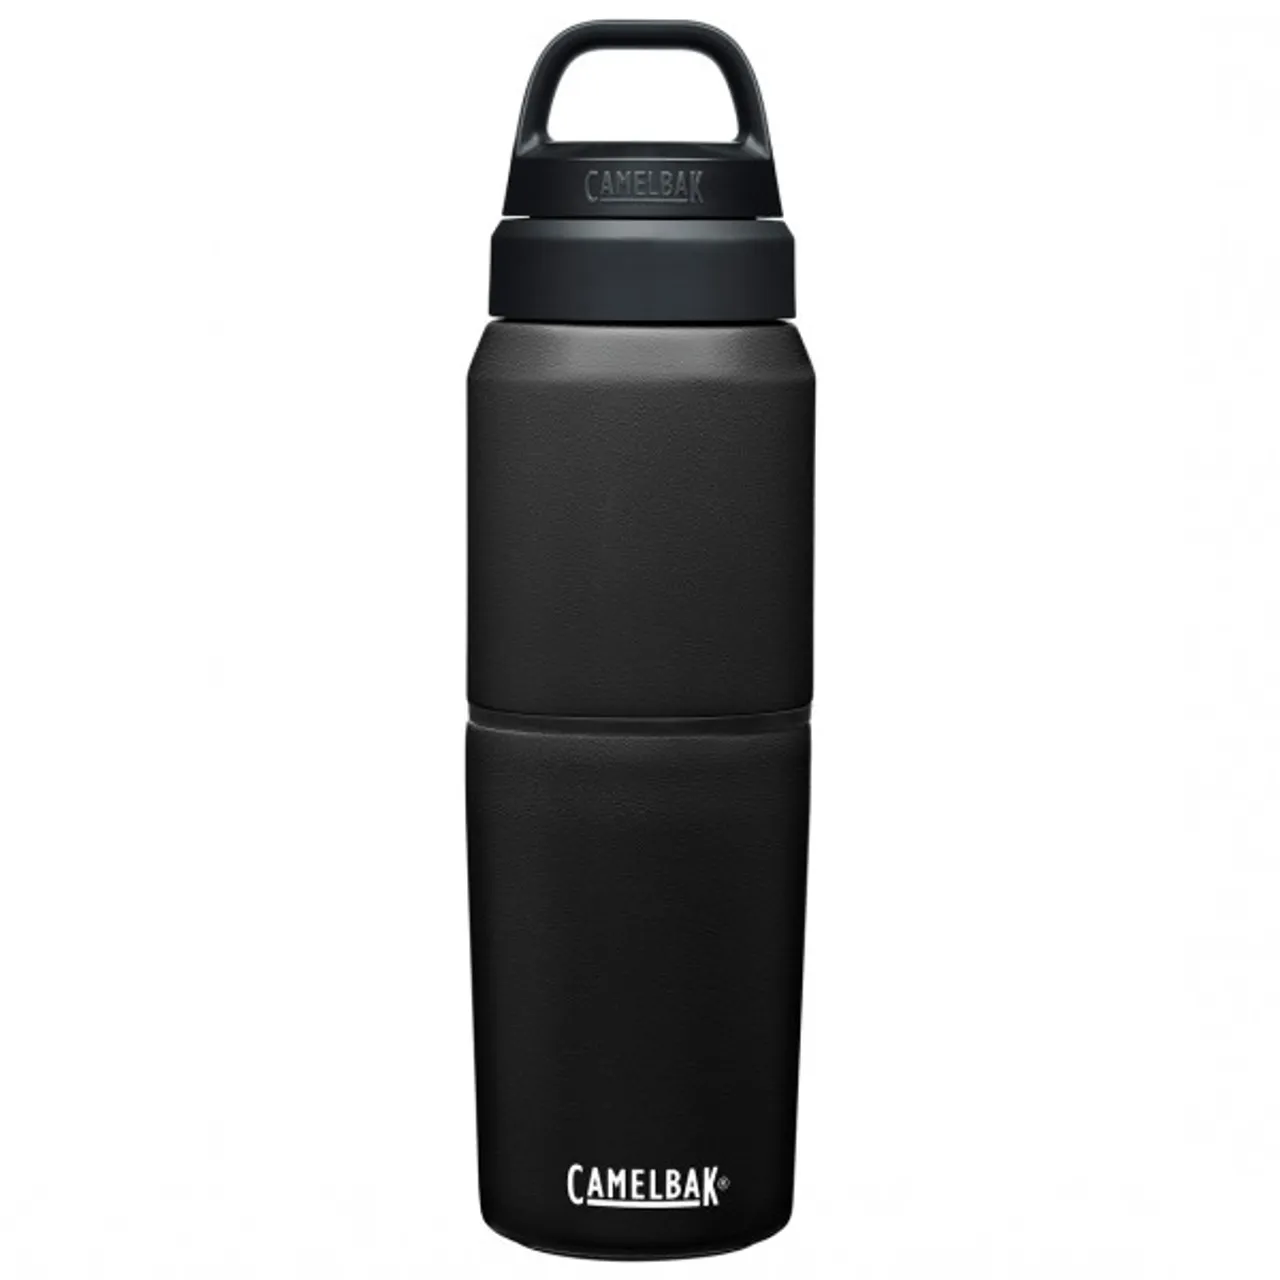 Camelbak - Multibev 17oz/12oz - Insulated bottle size 500 ml / 350 ml, black